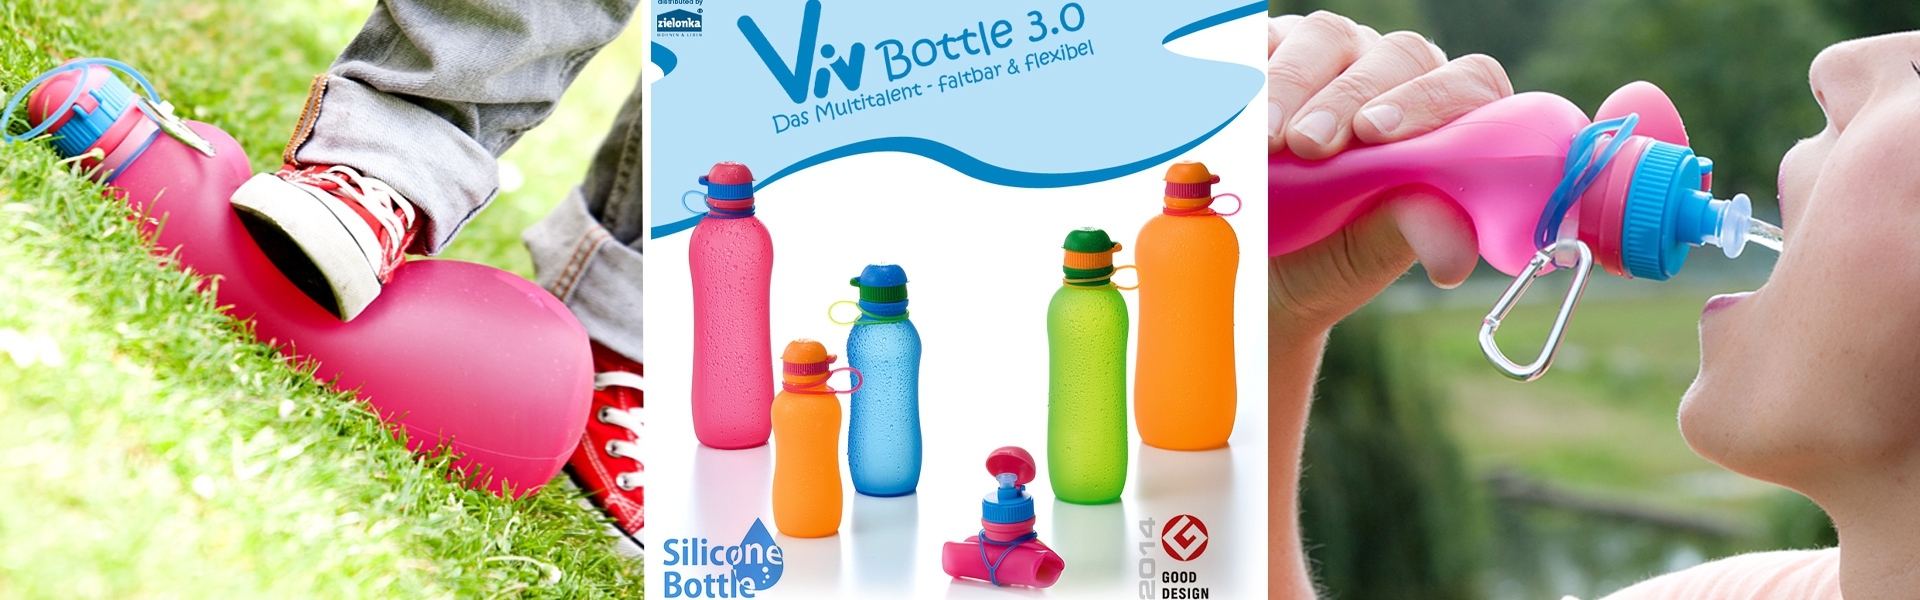 Viv Bottle 3.0